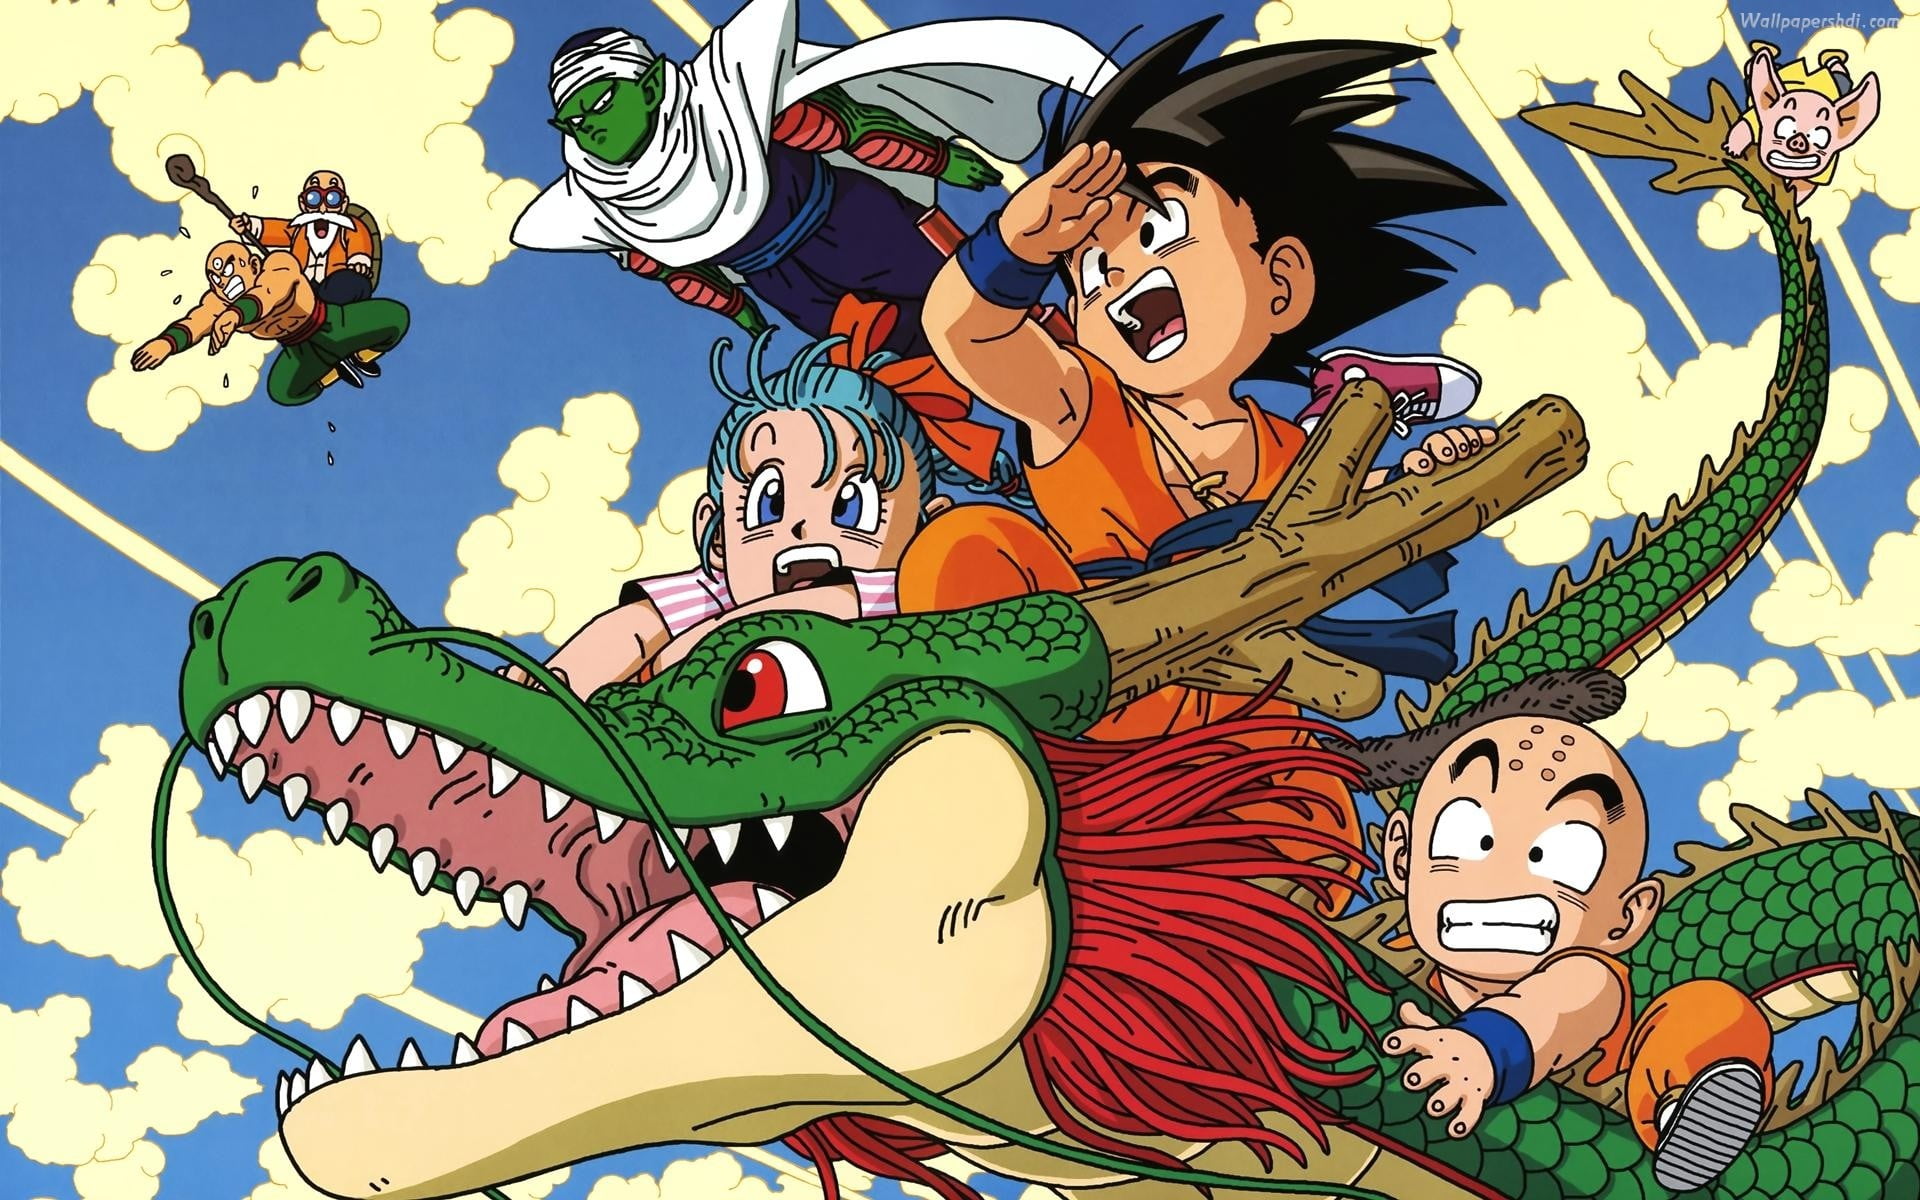 Dragon Ball Z poster, anime, Son Goku, Piccolo, Krillin, representation